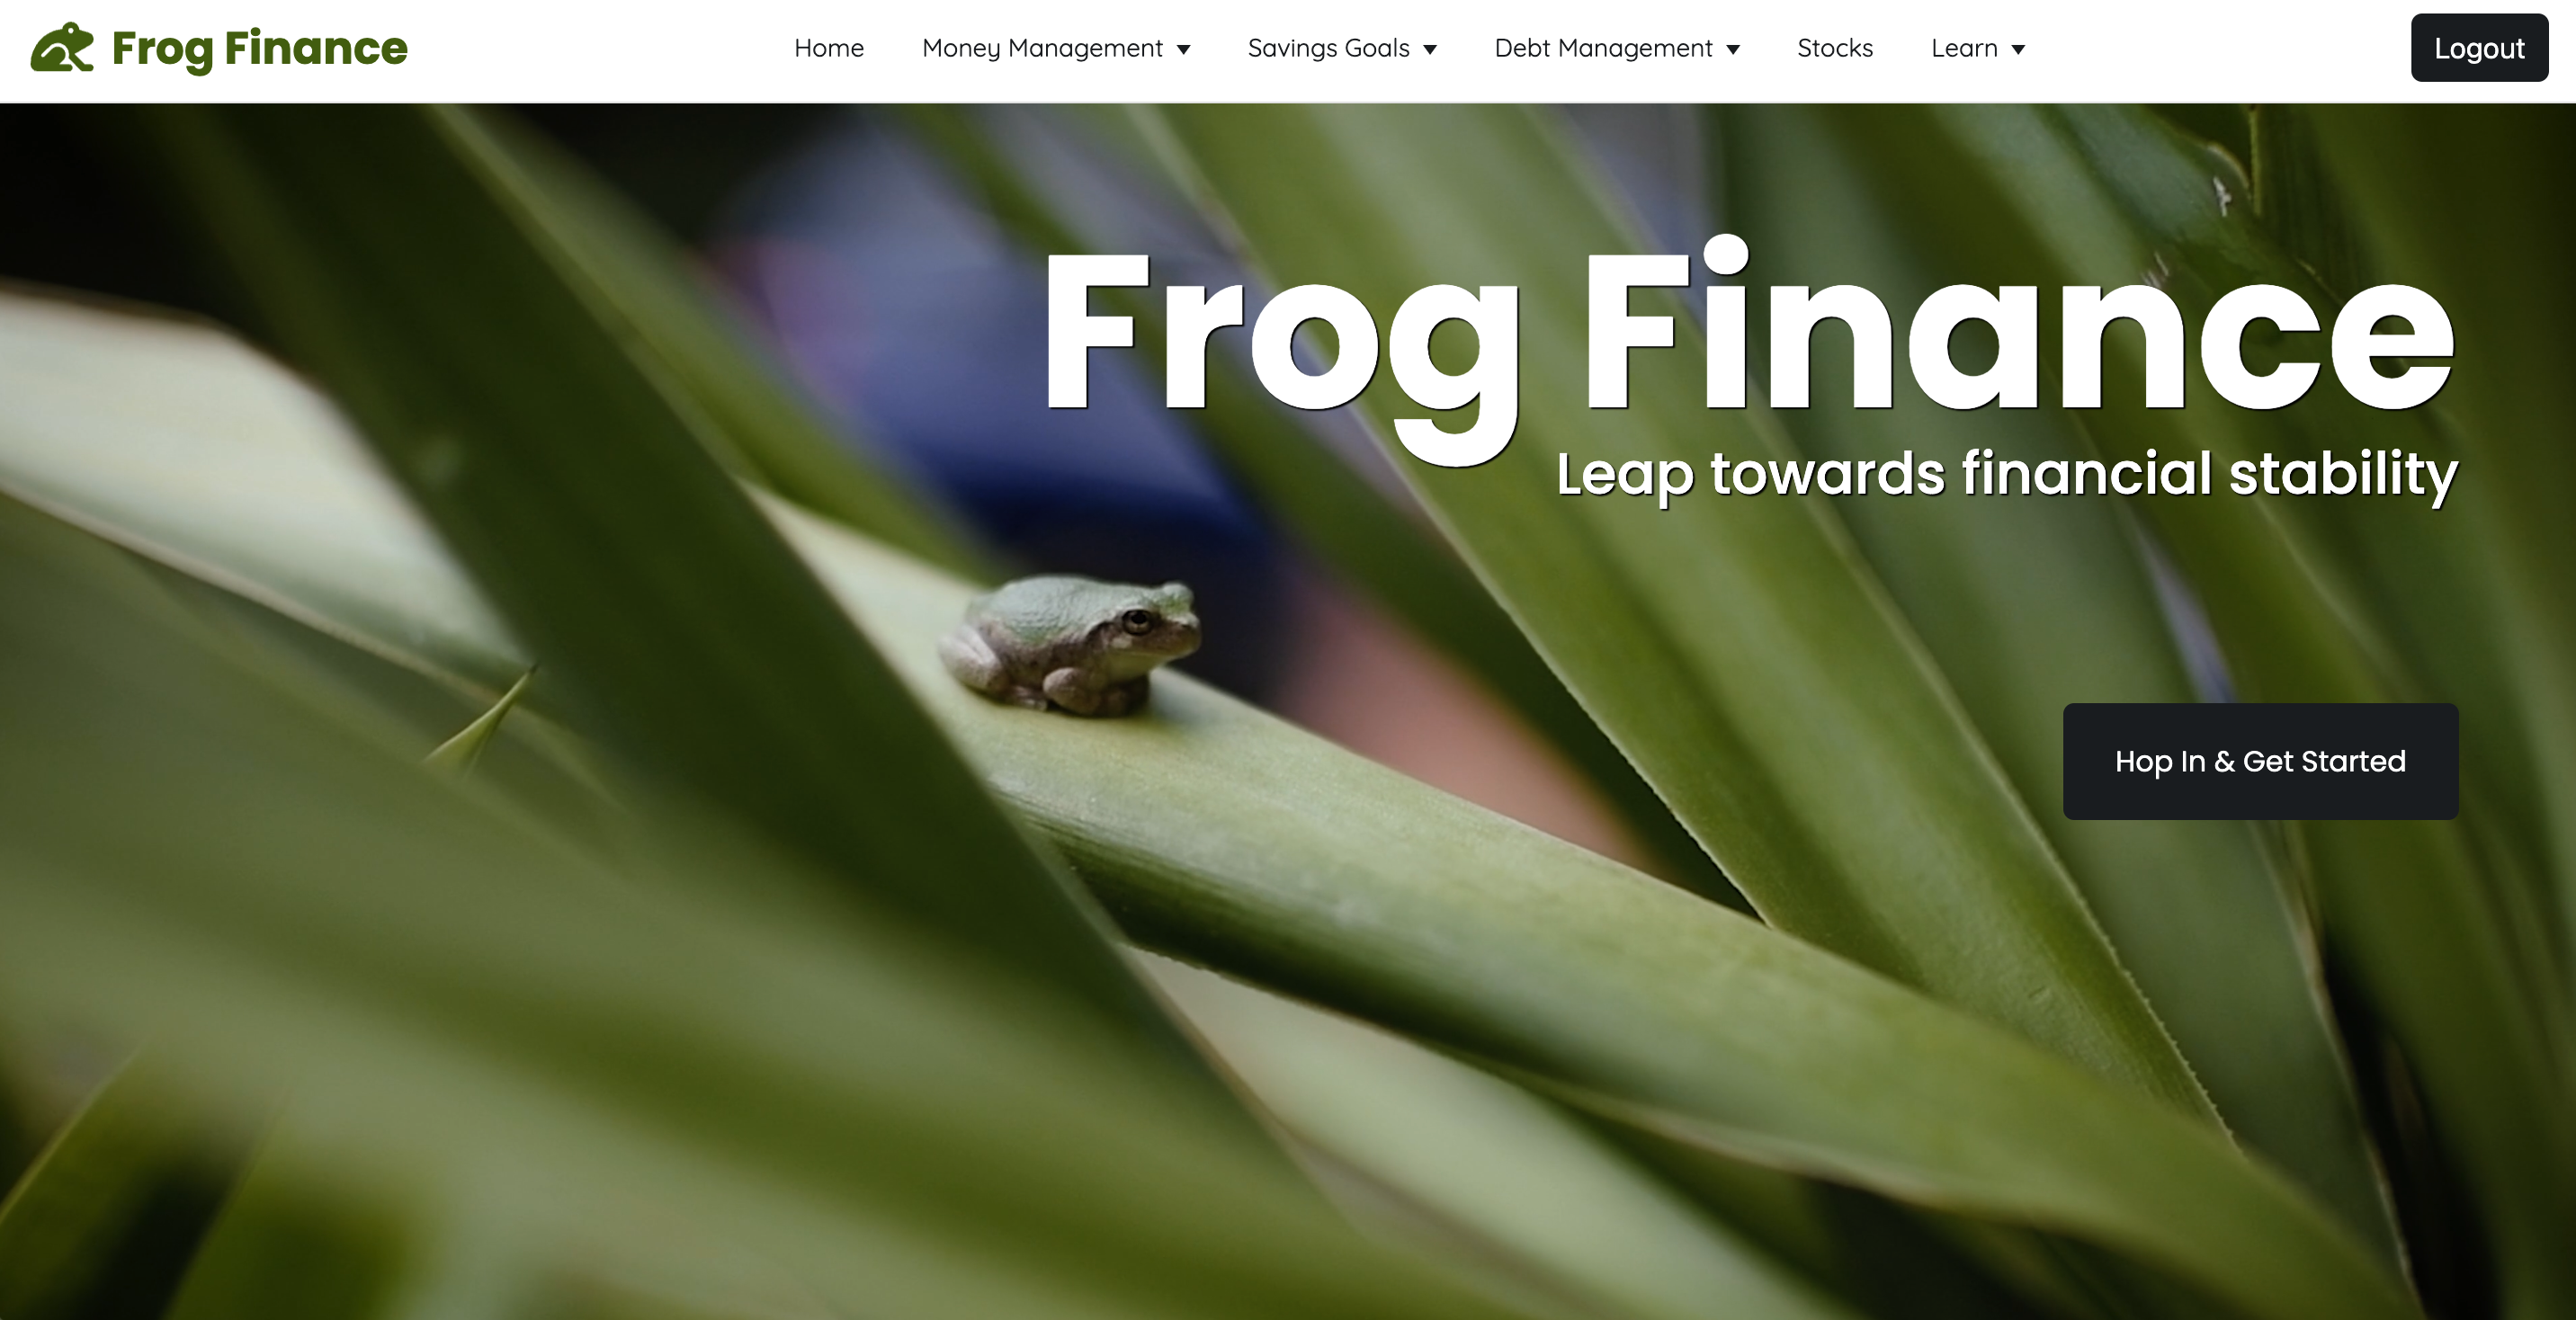 Image of frog finance app